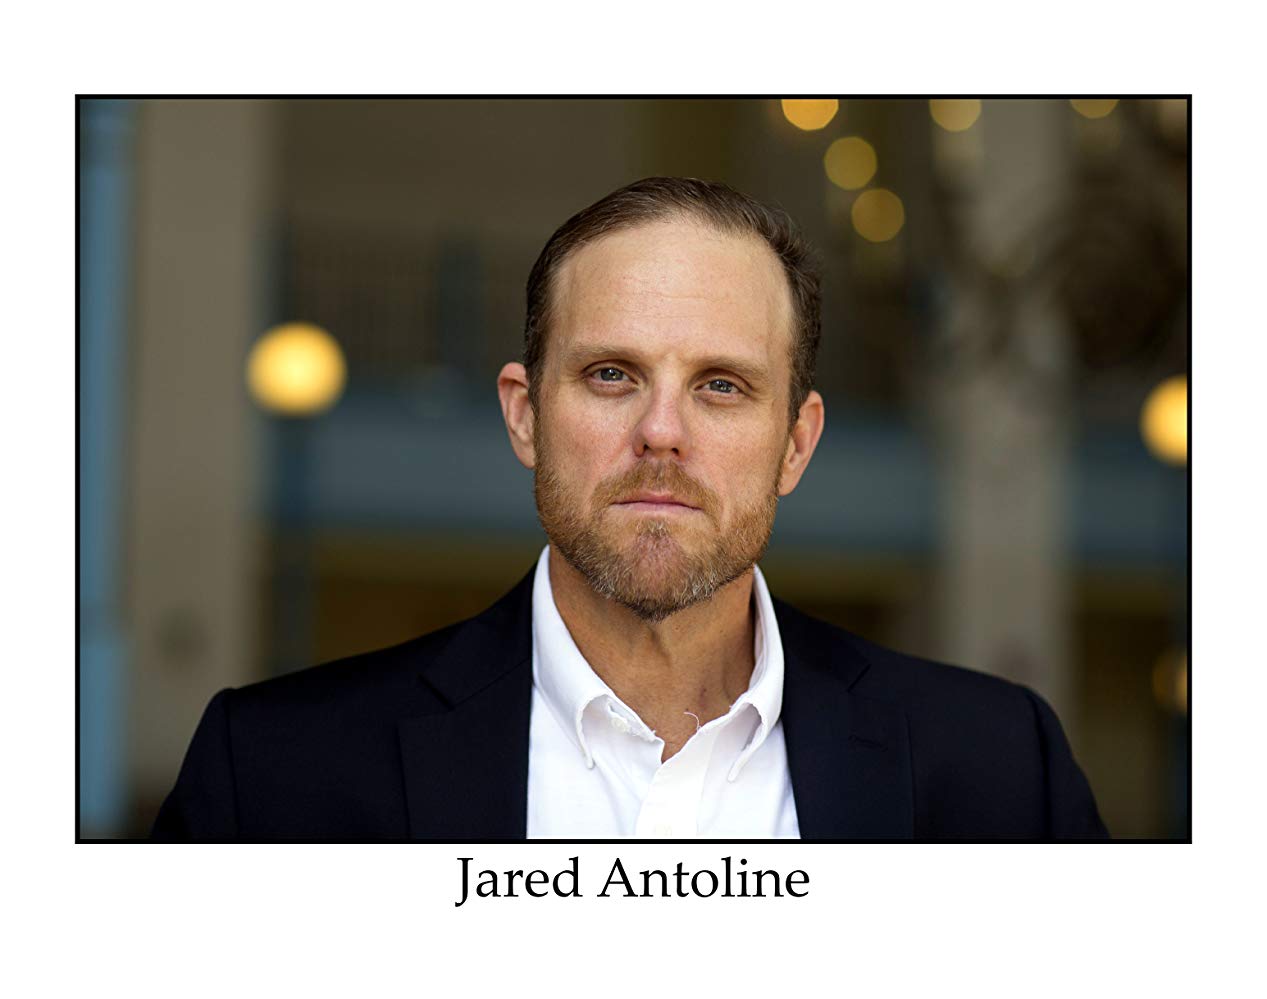 Jared Antoline